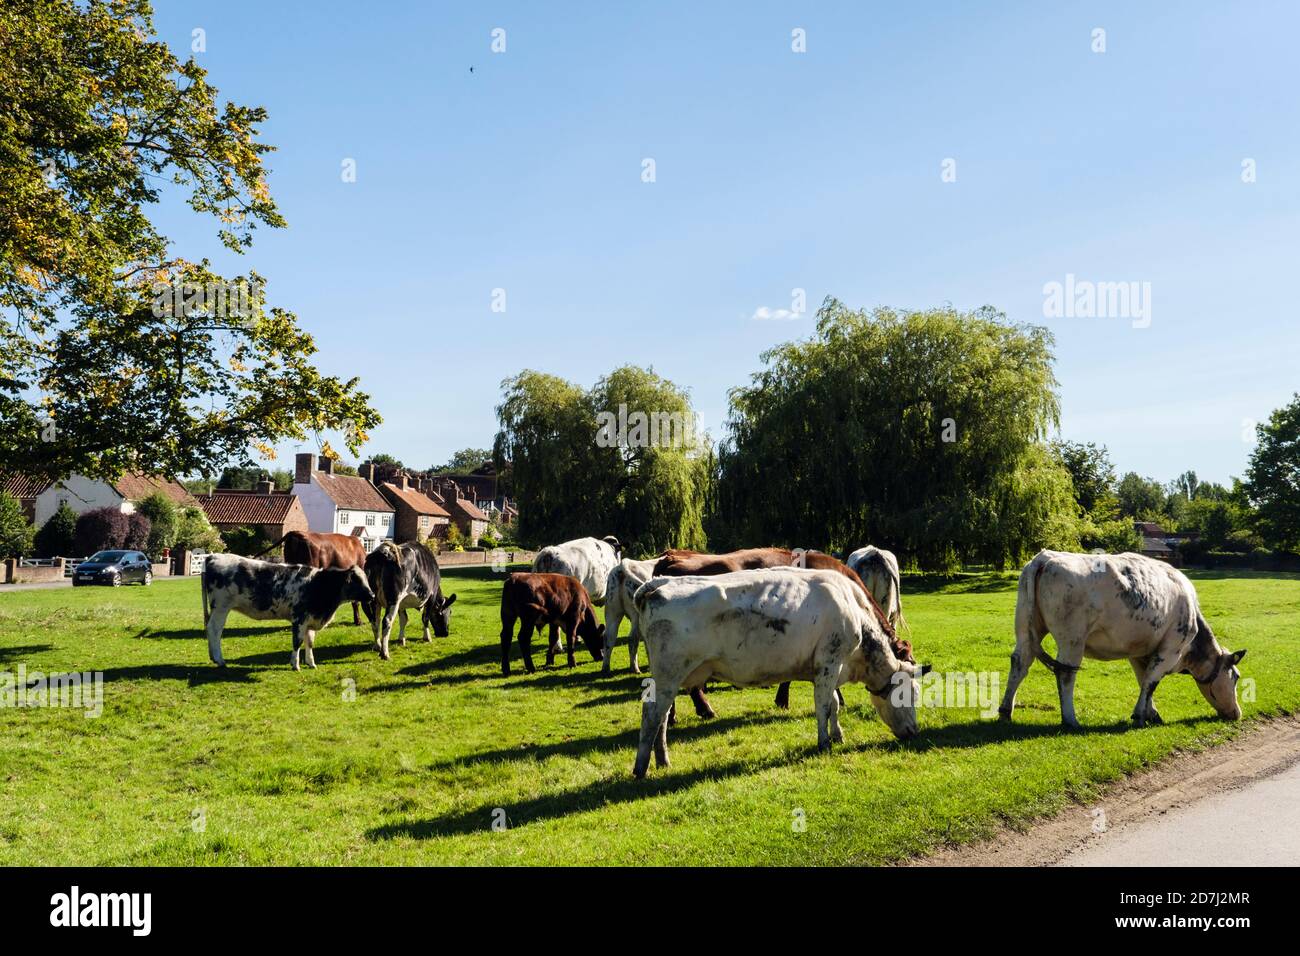 Bétail en liberté paître sur des terres communes sur un vert de village. Nun Monkton, York, Yorkshire du Nord, Angleterre, Royaume-Uni, Grande-Bretagne Banque D'Images